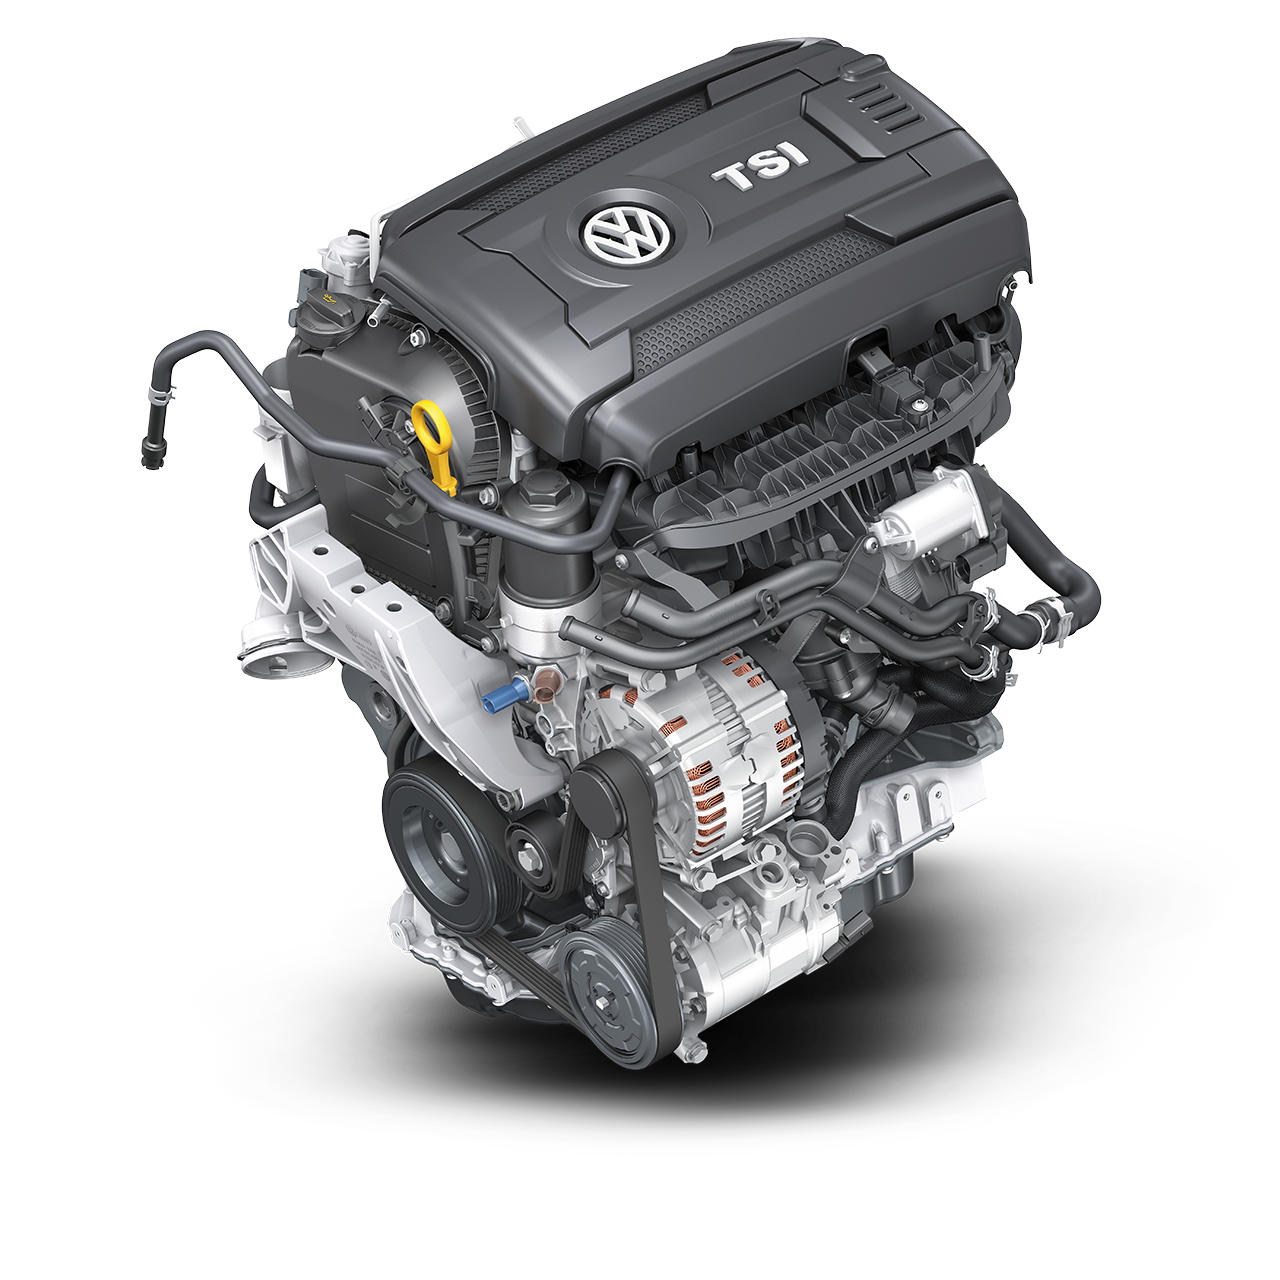 Volkswagen двигатели отзывы. Двигатель Volkswagen TSI 2.0. 1.8 TSI. 1.8 TSI ea888. Двигатель 1.8 TSI 152 Л.С.